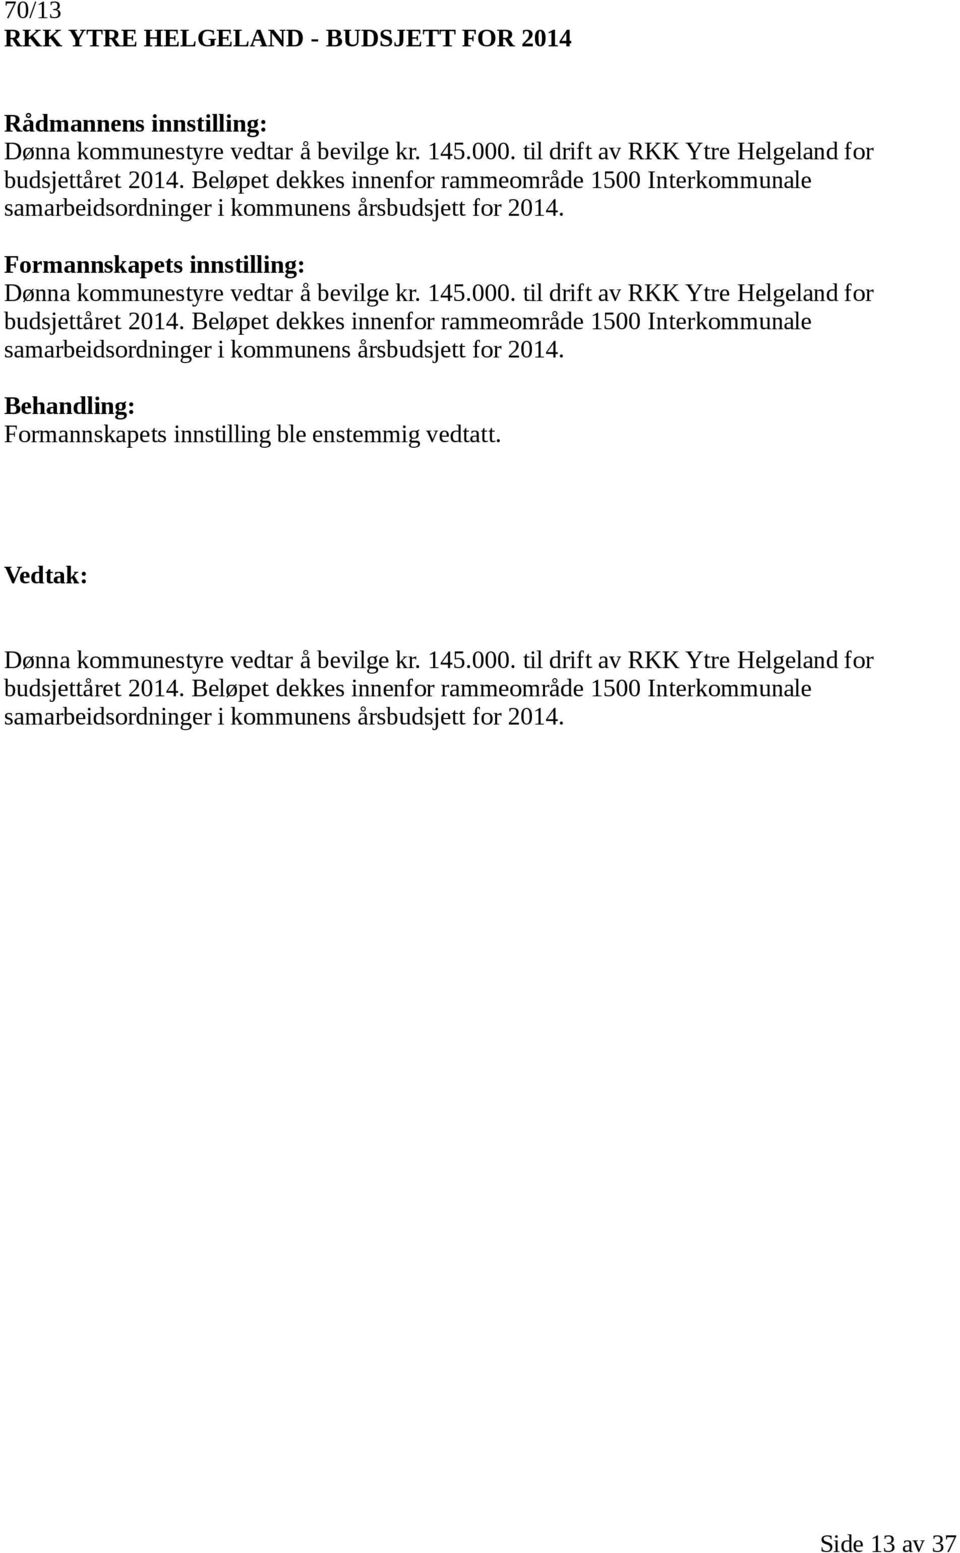 til drift av RKK Ytre Helgeland for budsjettåret 2014.  til drift av RKK Ytre Helgeland for budsjettåret 2014.